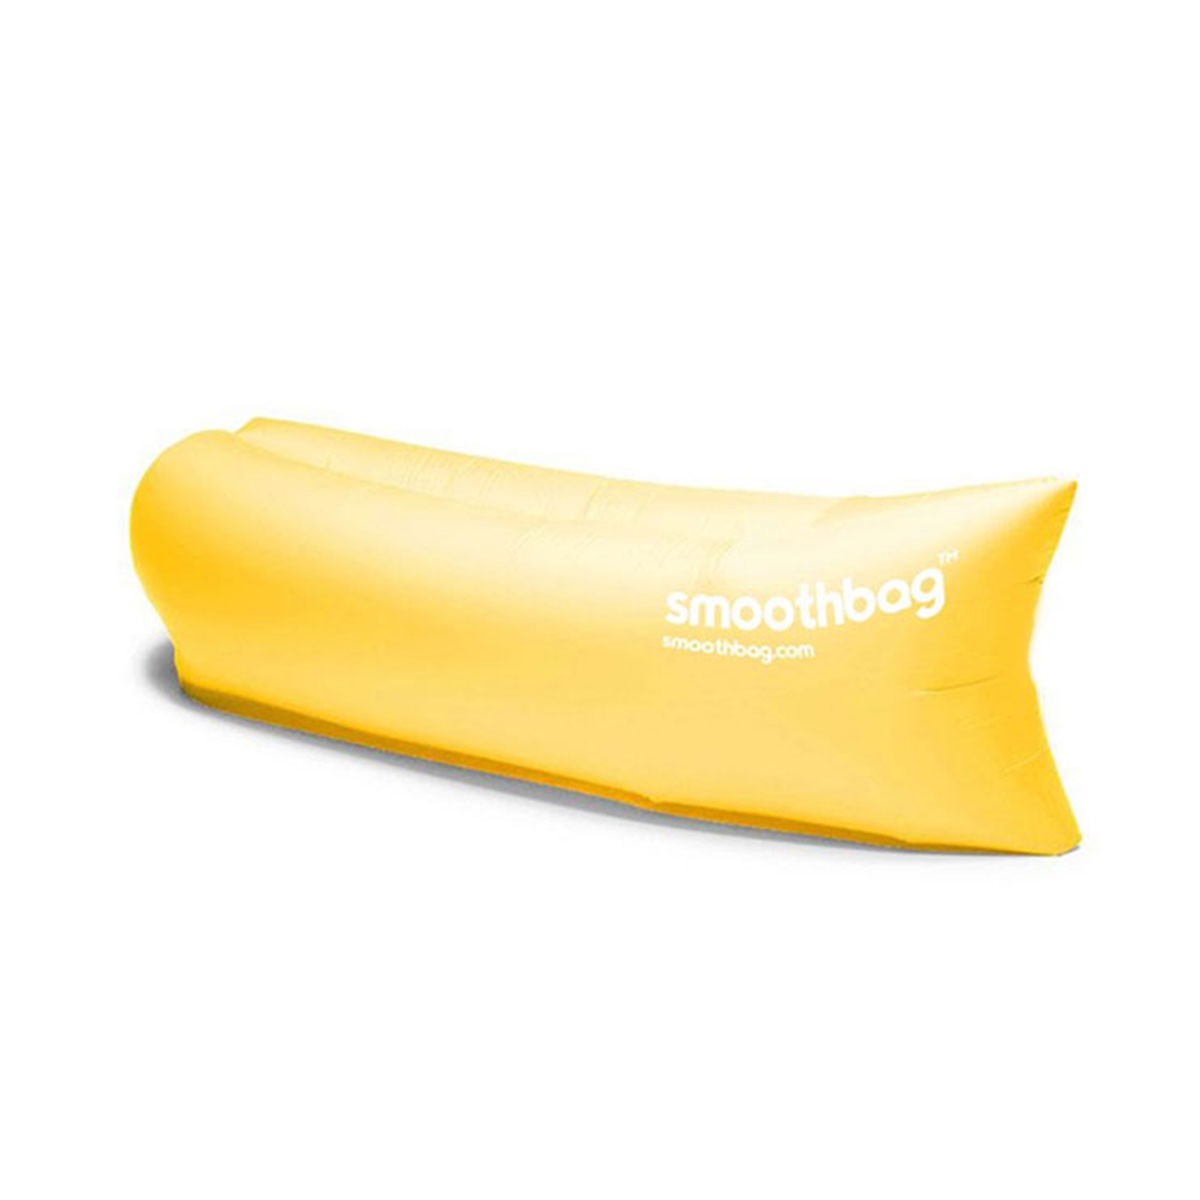 スムースバッグ smoothbag 正規品 アウトドア ソファー Smoothbag SB-YELLOW Yellow